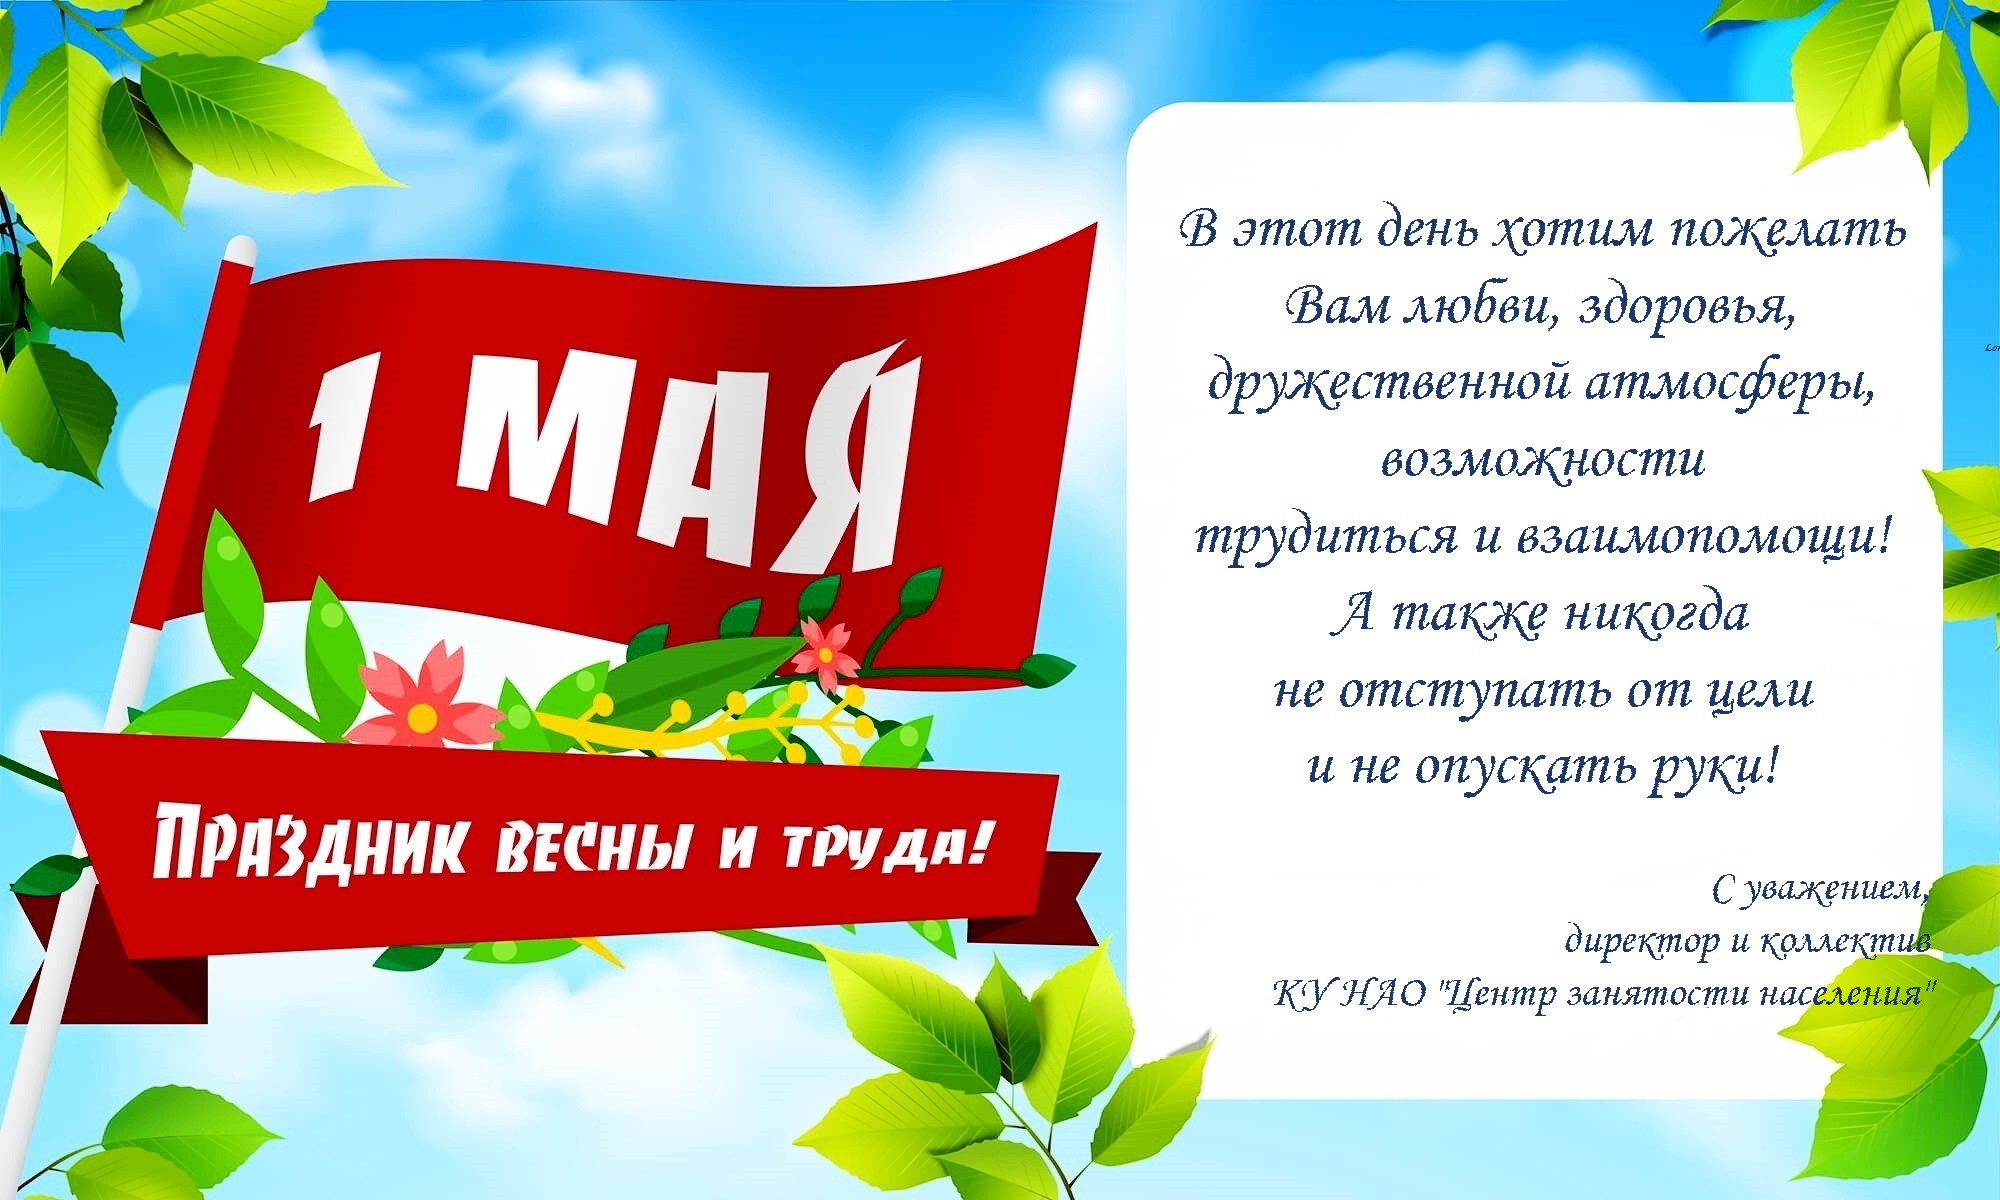 Какая погода на майские праздники в москве. Праздник весны и трада. Поздравление с 1 мая. 1 Мая праздник весны и труда. День весны и труда открытка.